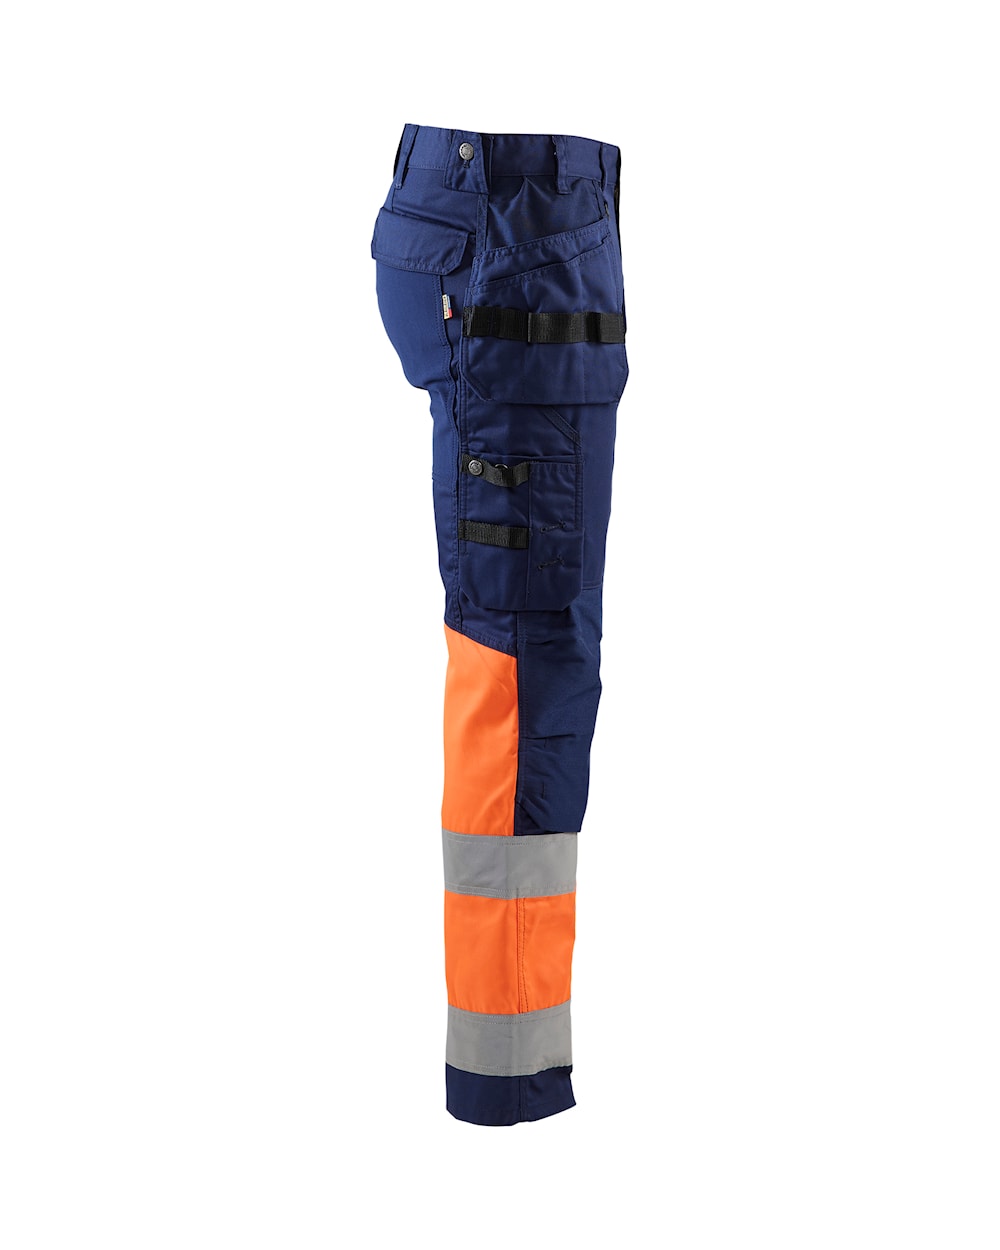 Blaklader Hi-Vis Trousers with Stretch 1558 - Navy Blue/Hi-Vis Orange